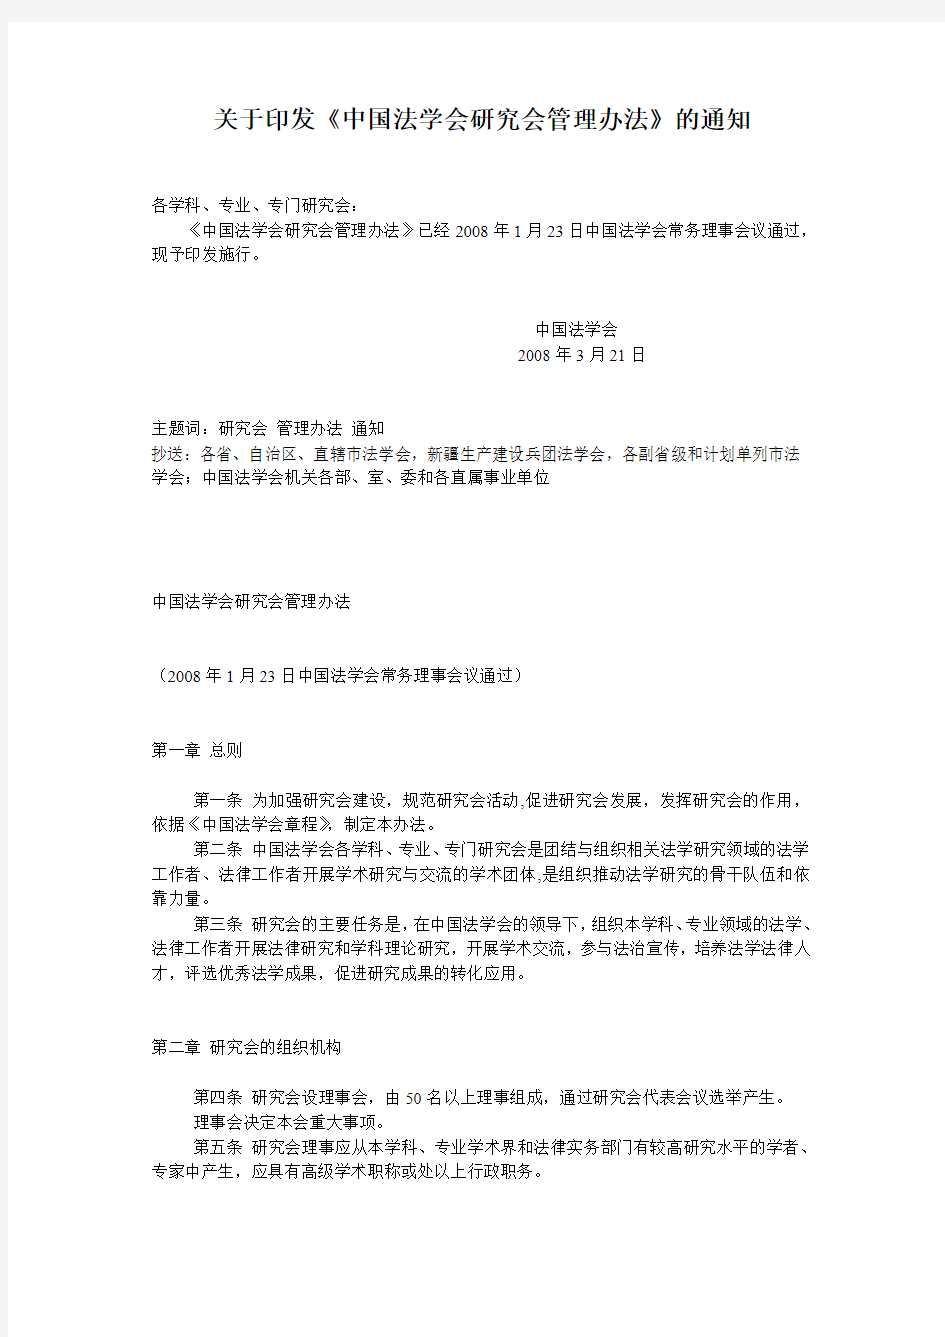 关于印发中国法学会研究会管理办法的通知